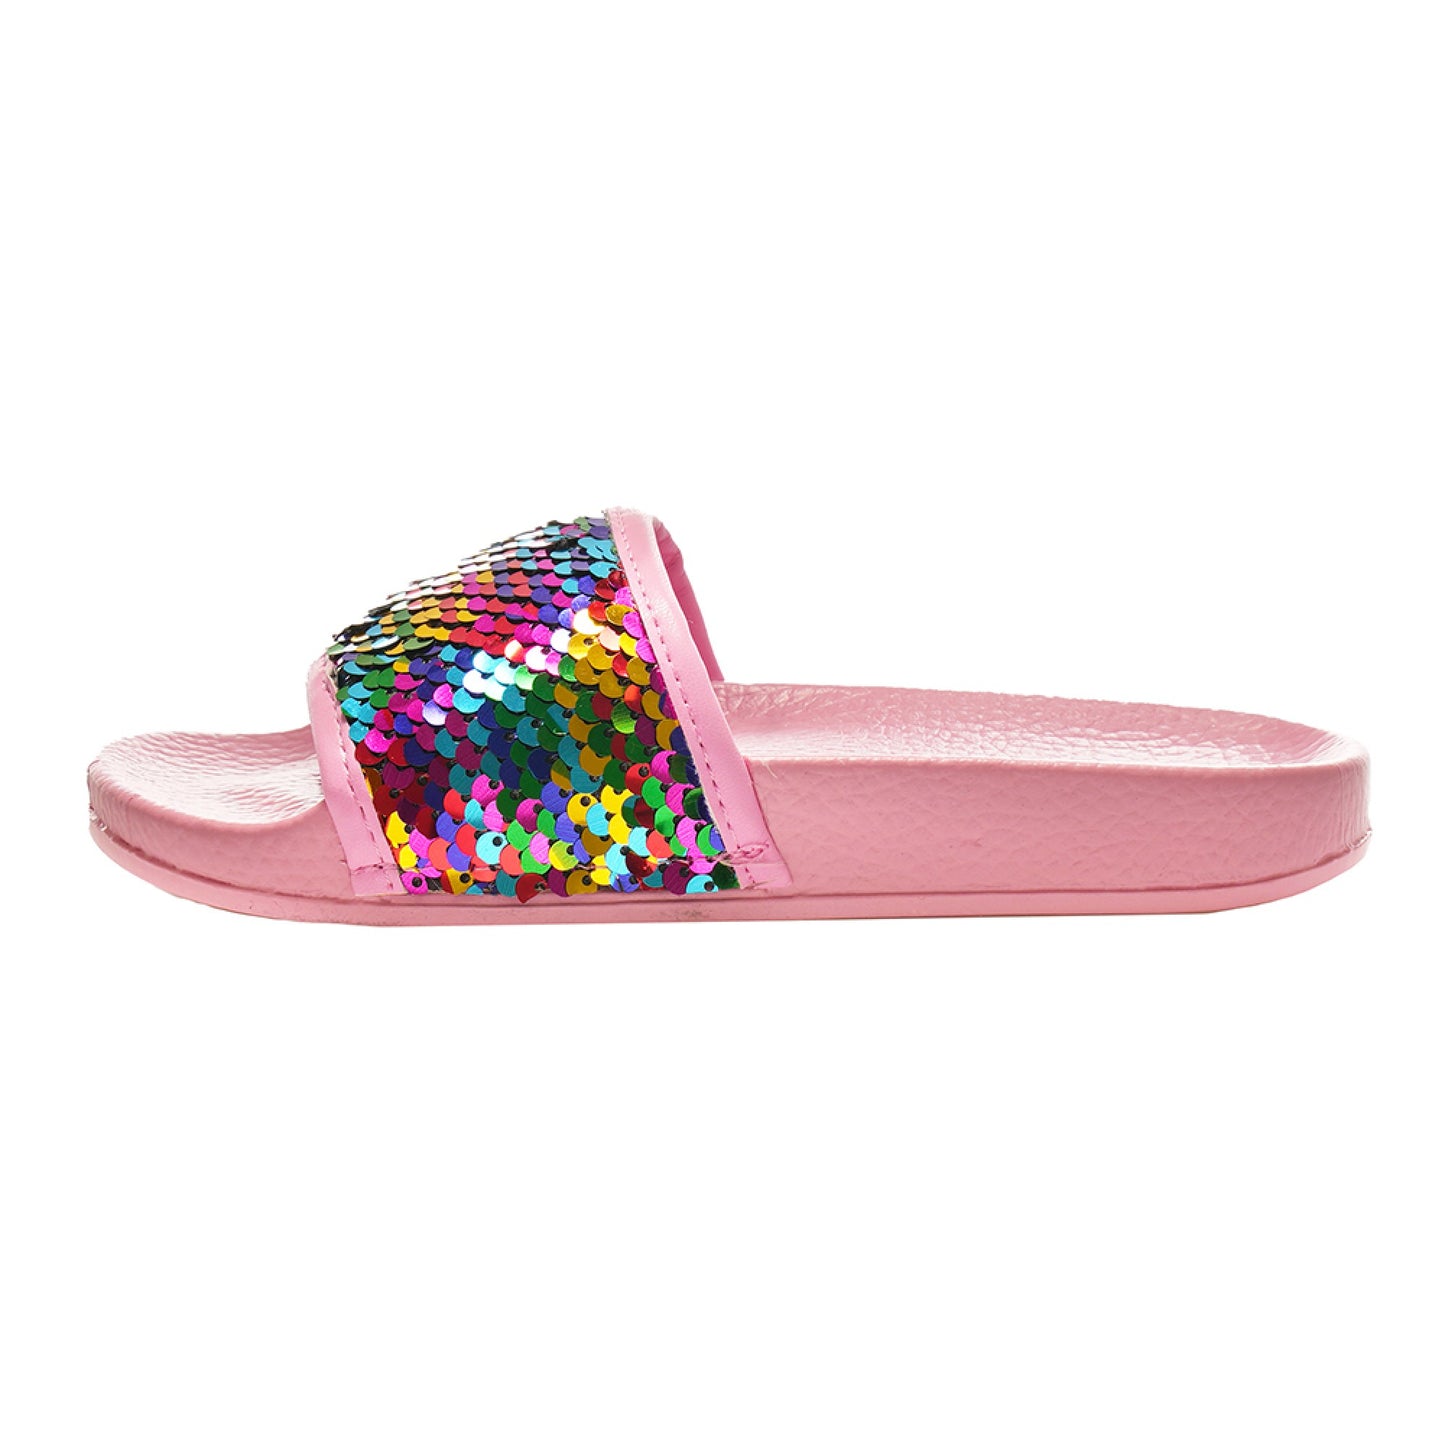 Girls Rainbow Pink Sequin Pool Slider Beach Sandals